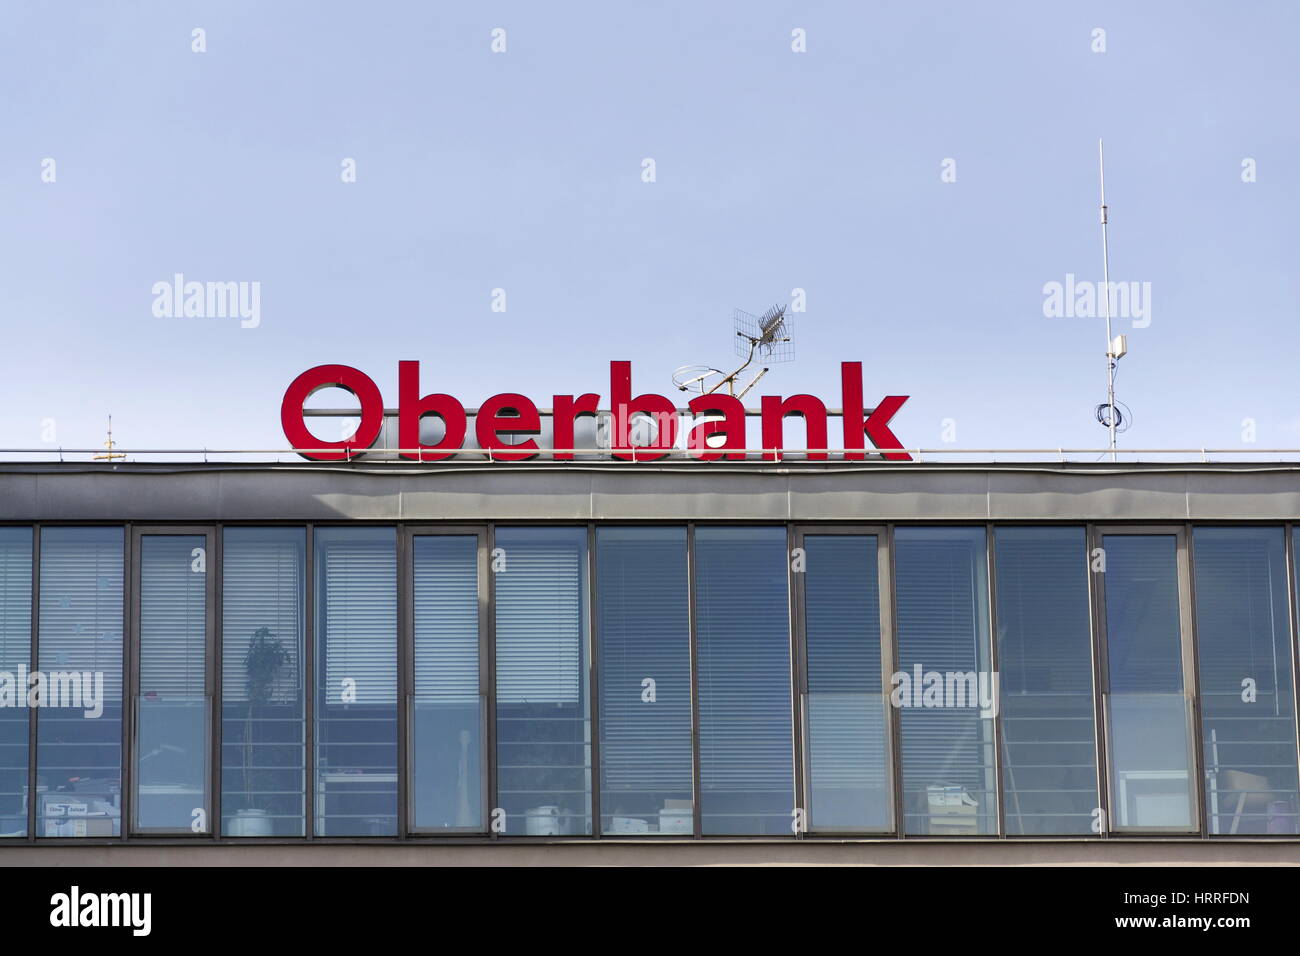 Praga, Repubblica Ceca - 3 Marzo: Oberbank da 3-Banken-Gruppe logo aziendale sulla costruzione della sede centrale ceca il 3 marzo 2017 a Praga, Repubblica Ceca r Foto Stock